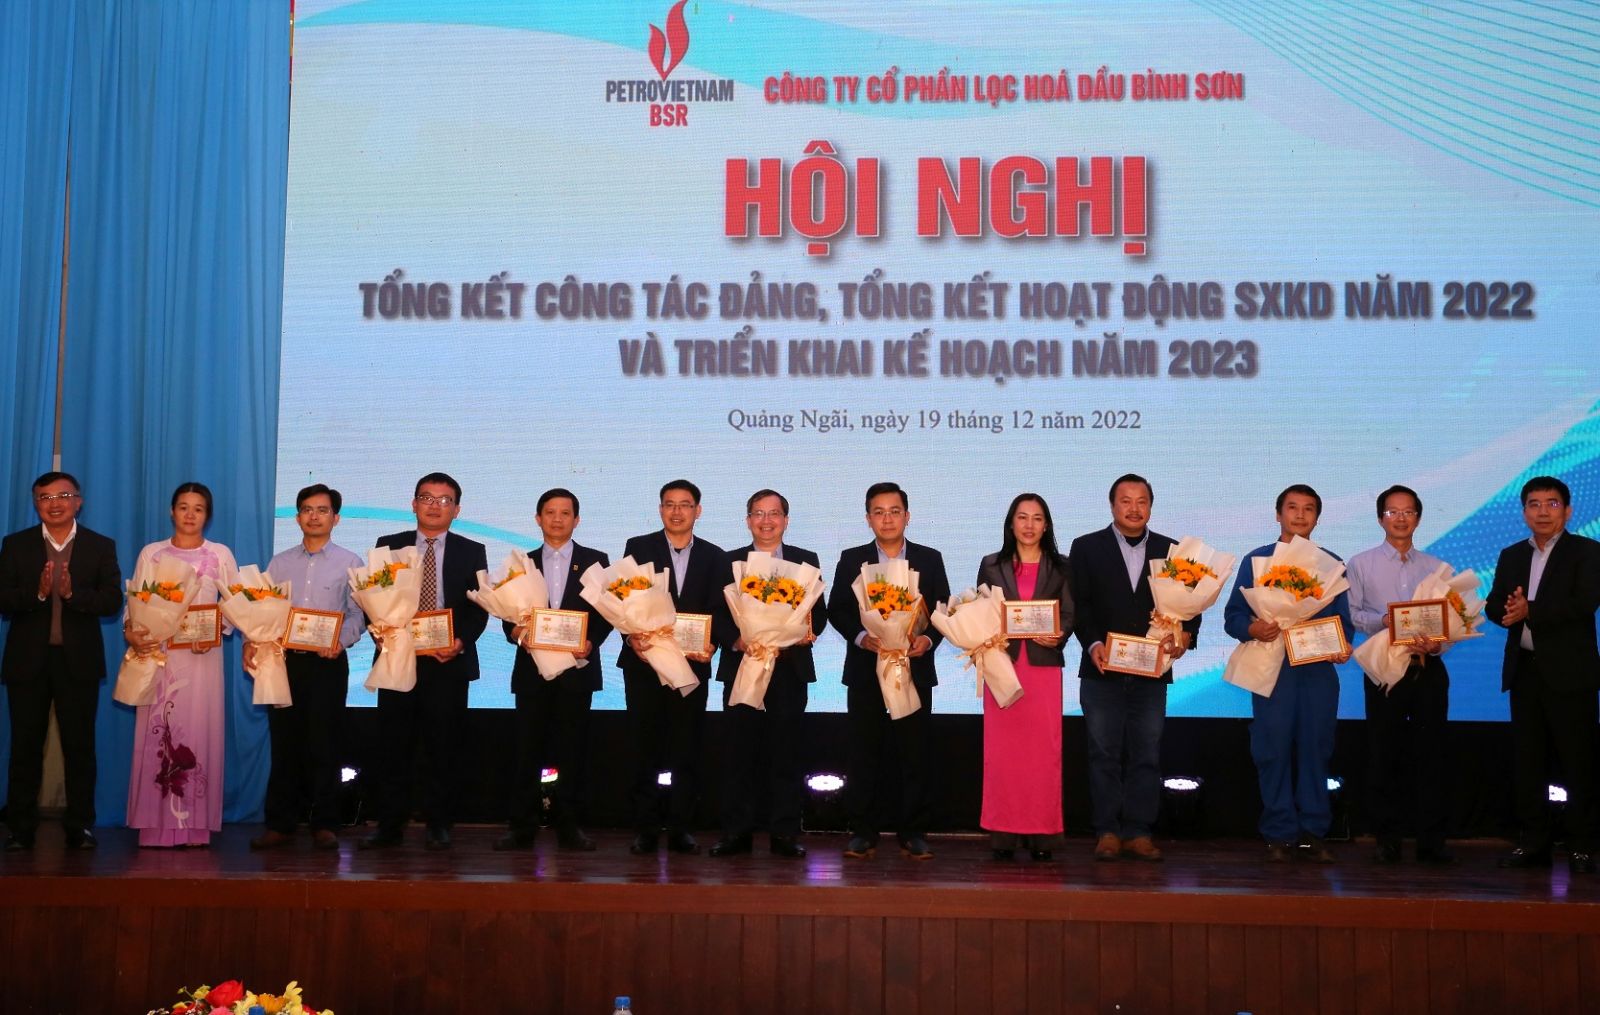 Tổng Giám đốc BSR Bùi Ngọc Dương báo cáo tổng kết tình hình SXKD năm 2022 và đề ra nhiệm vụ, kế hoạch 2023.